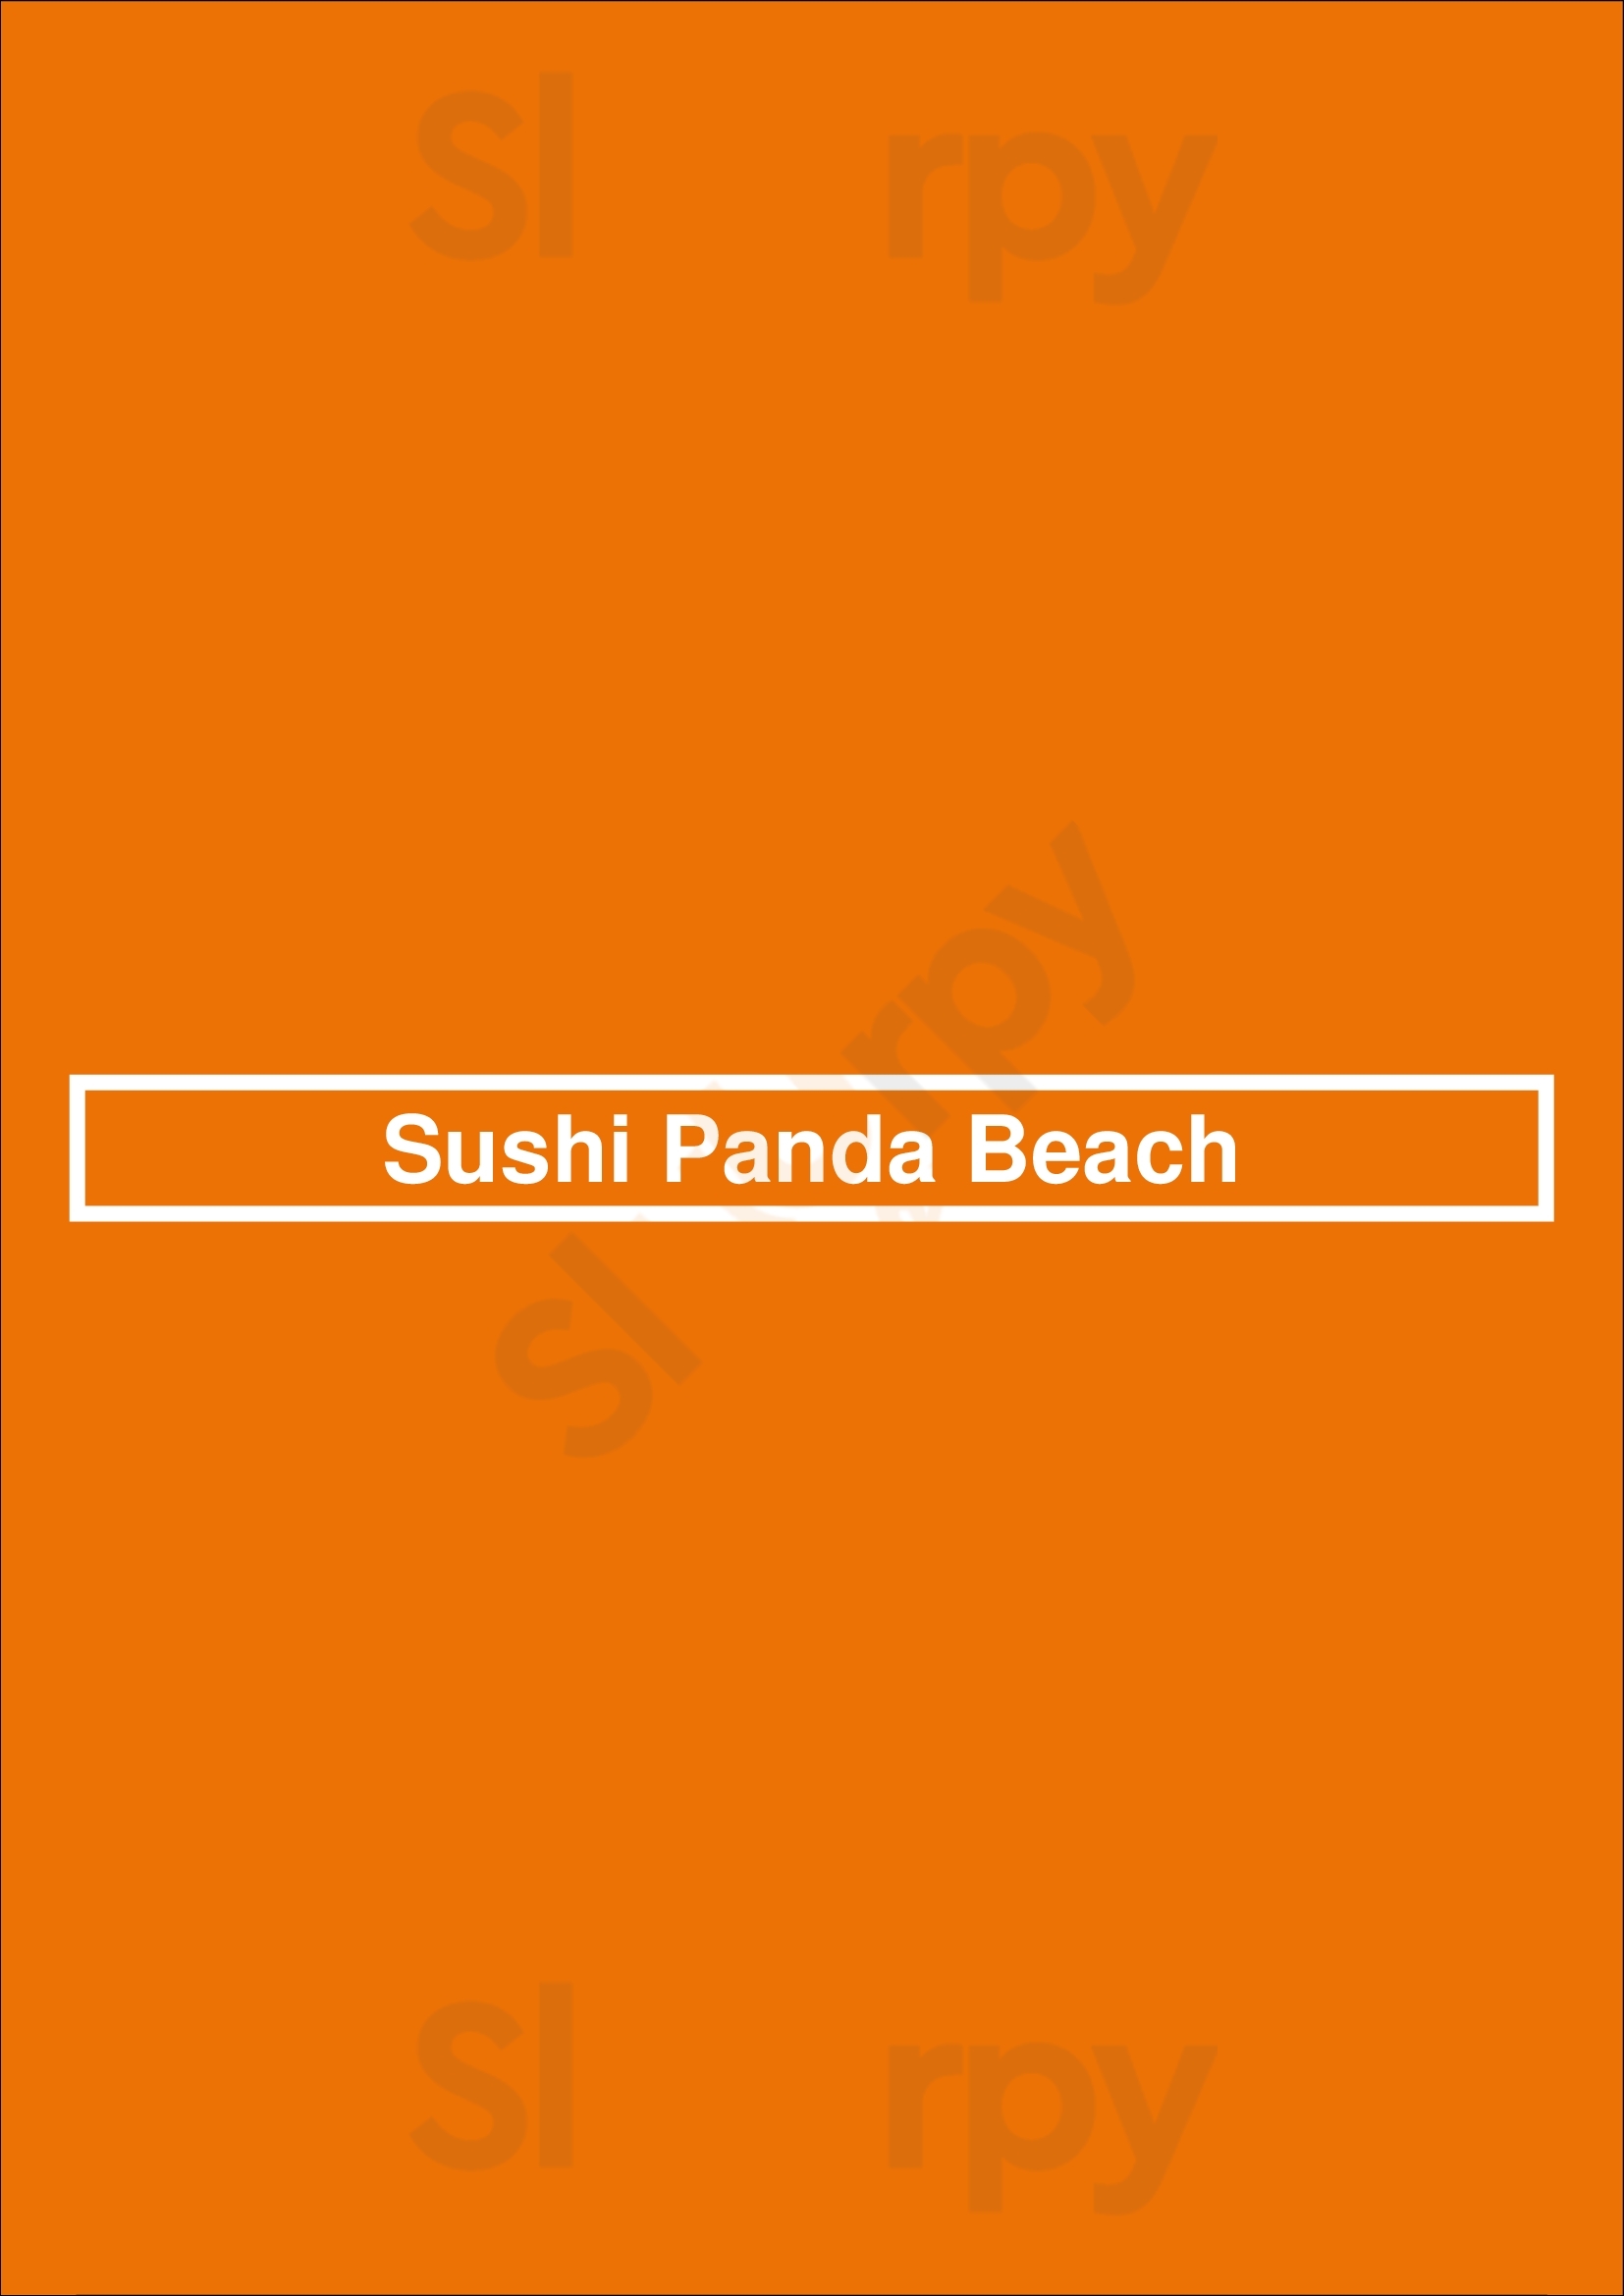 Sushi Panda Beach Chiclana de la Frontera Menu - 1